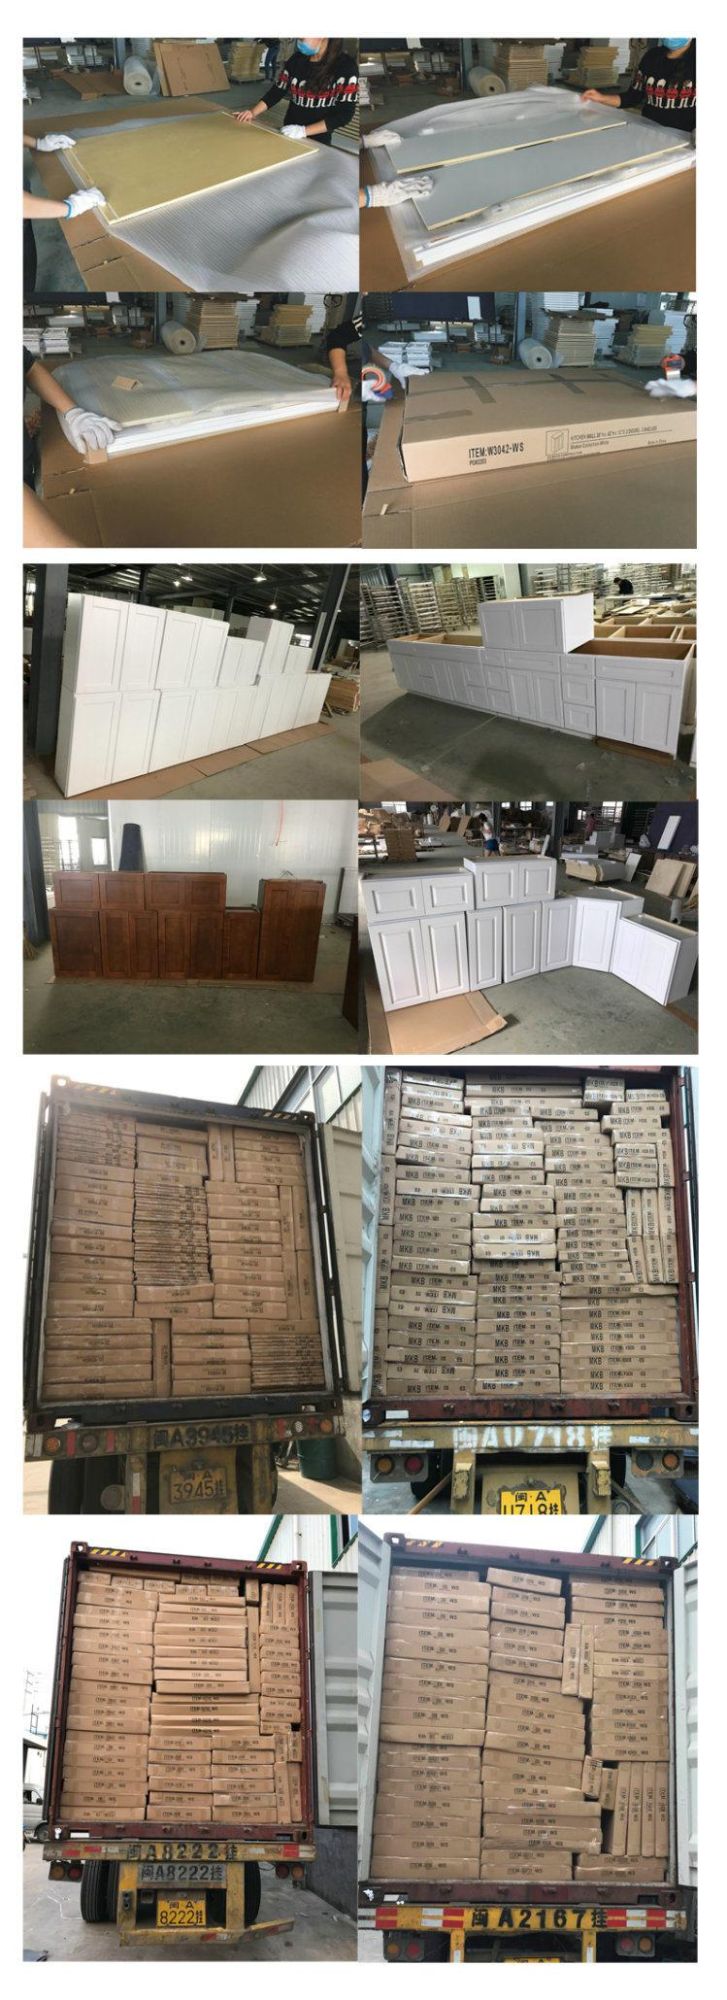 American Kitchen Furniture Solid Wood Birch Kitchen Cabinet